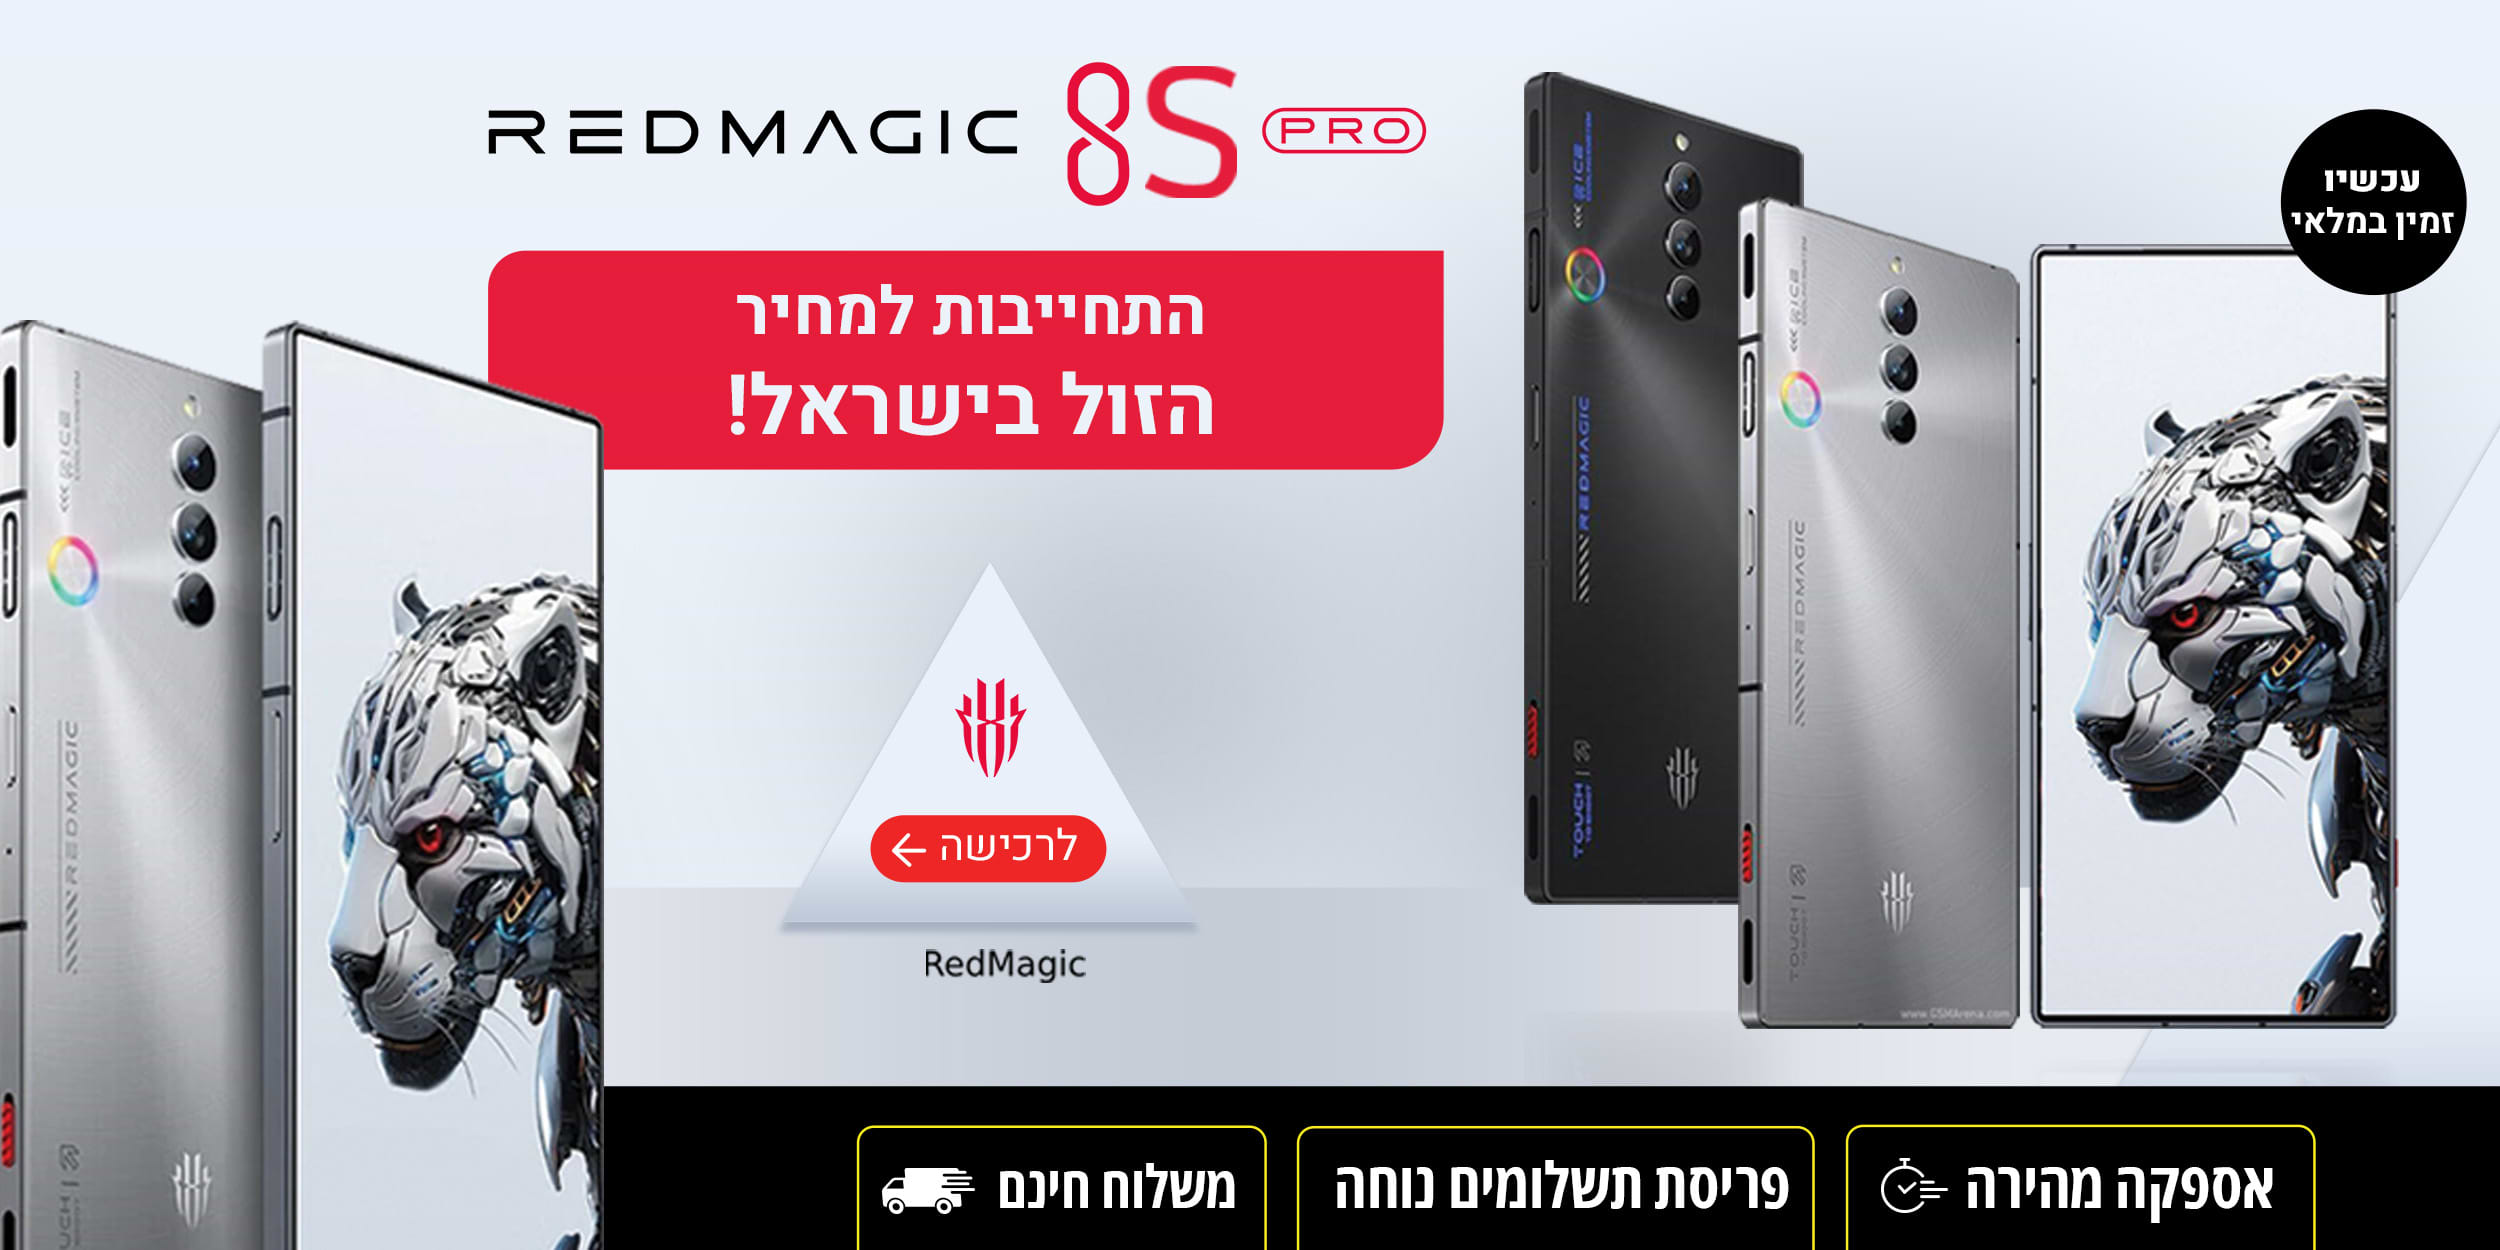 Redmagic 8S pro התחייבות למחיר הזול בישראל! עכשיו זמיו במלאי אספקה מהירה | פריסת תשלומים נוחה | משלוח חינם